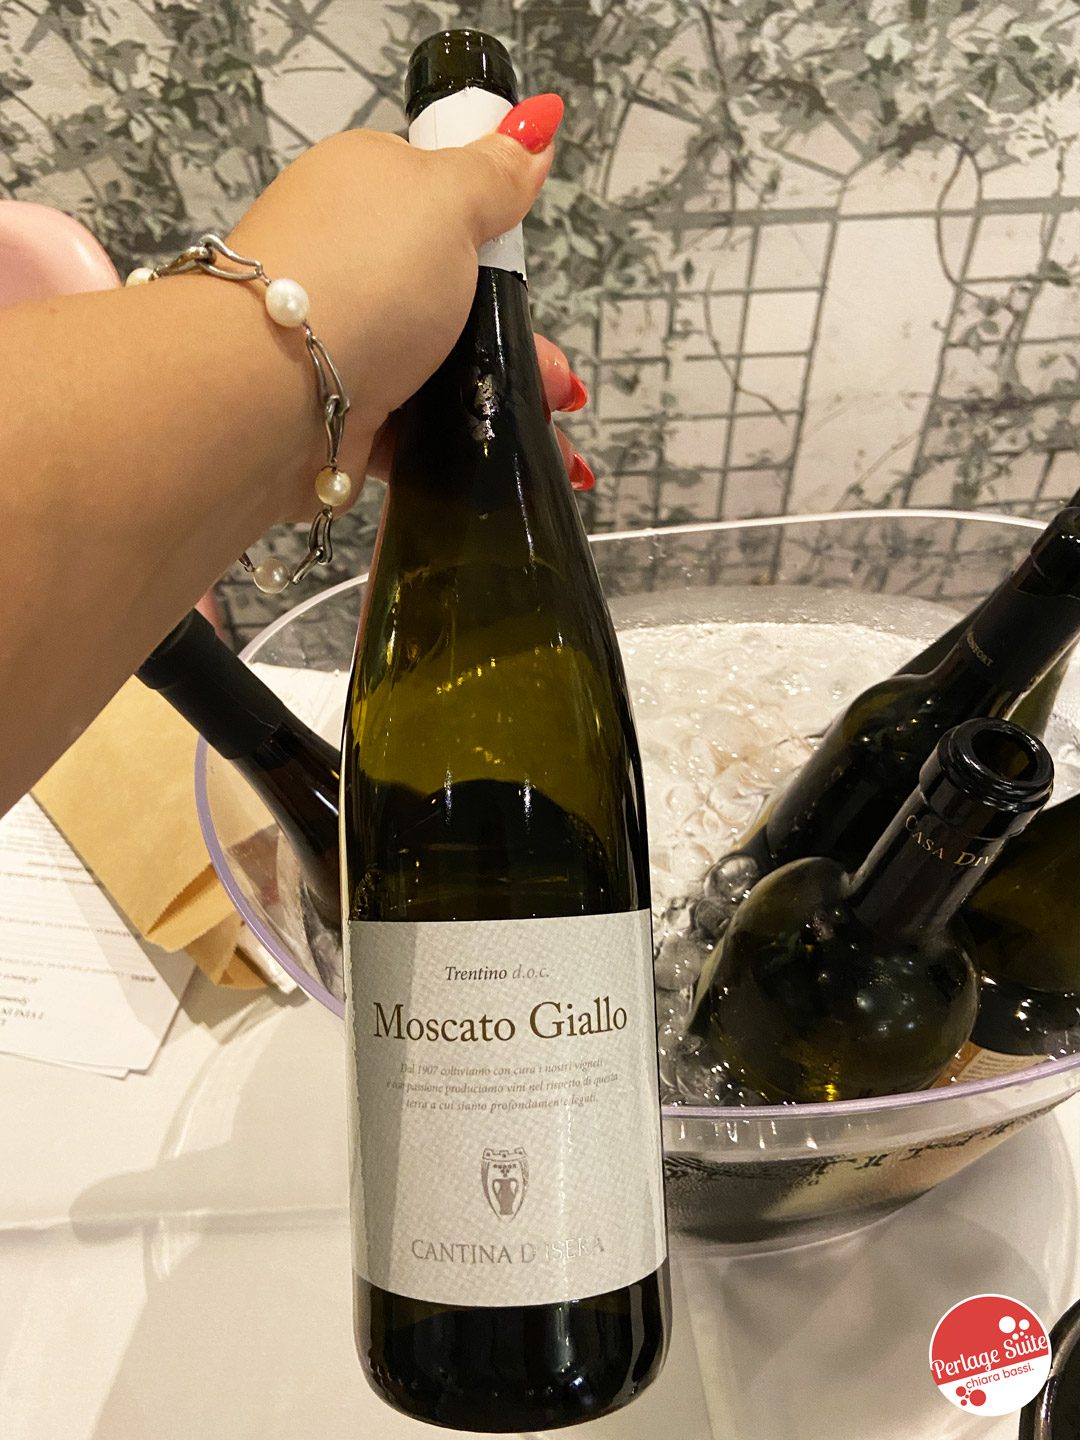 moscato wine fest 2021 go wine